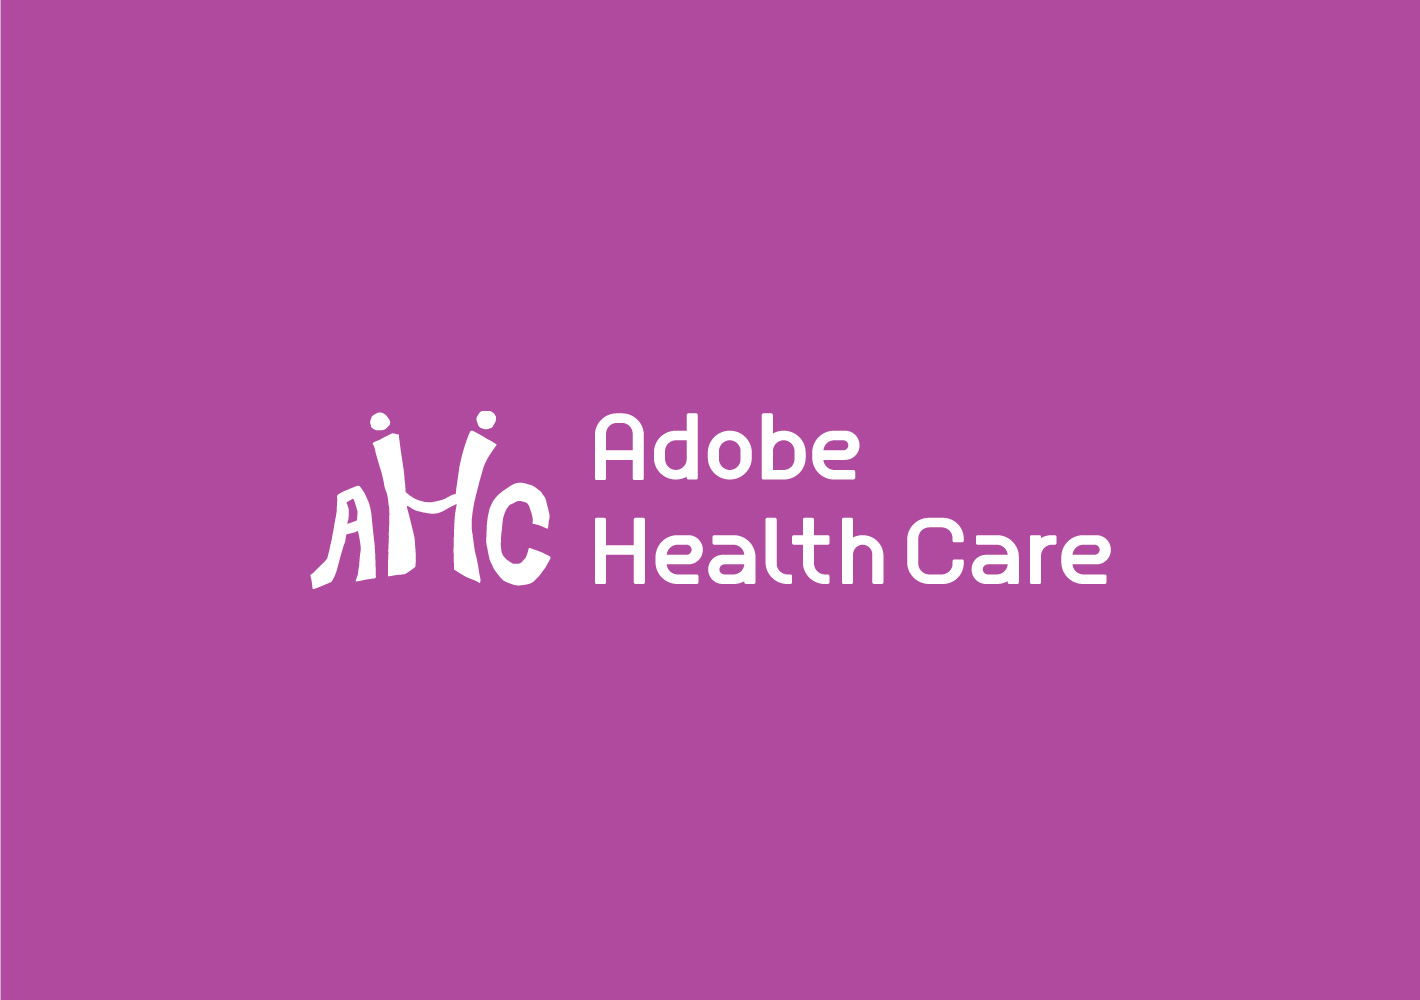 Adobe Health Care